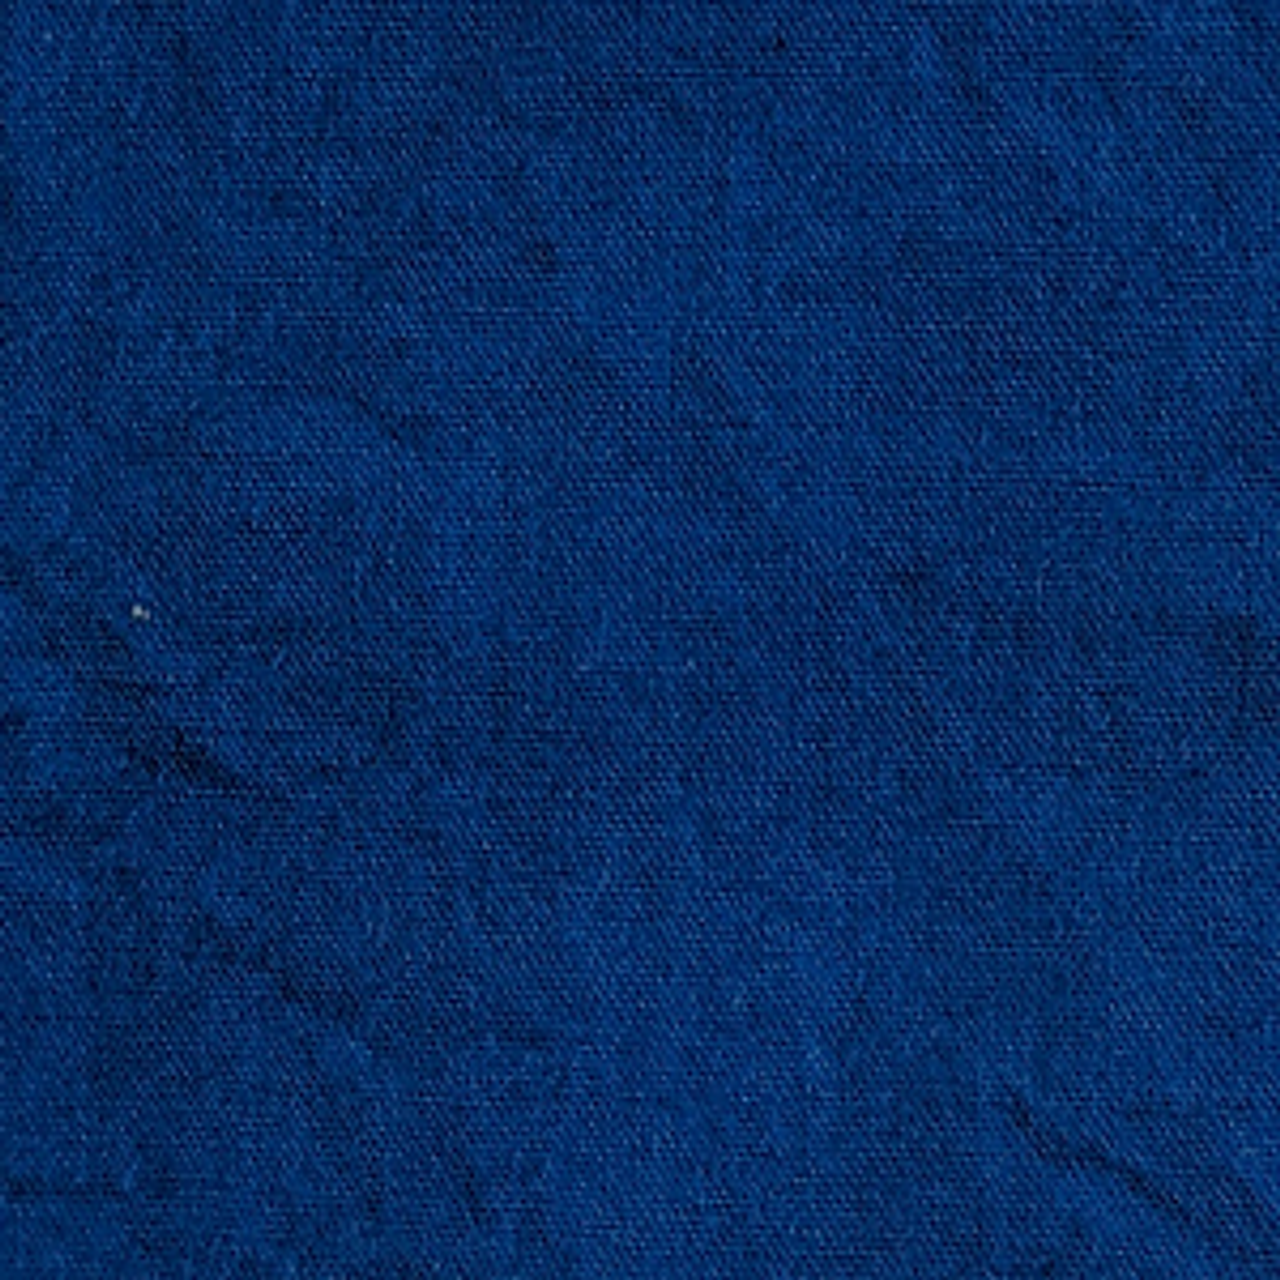 Cerulean Blue #52 - Grateful Dyes, Inc.